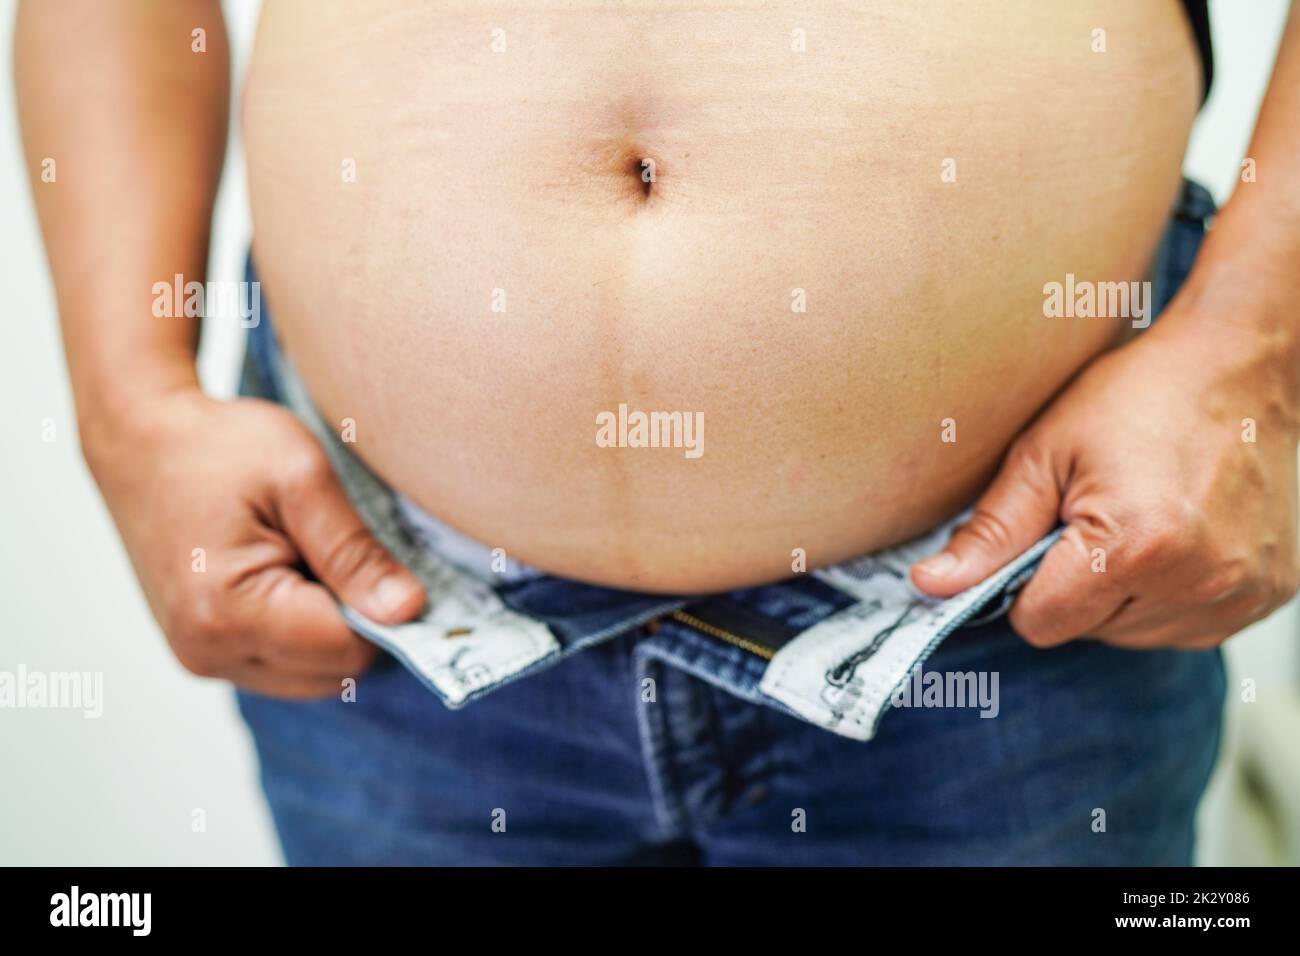 Asiatische Frau zeigen dicken Bauch große Übergewicht und Adipositas im Büro. Stockfoto